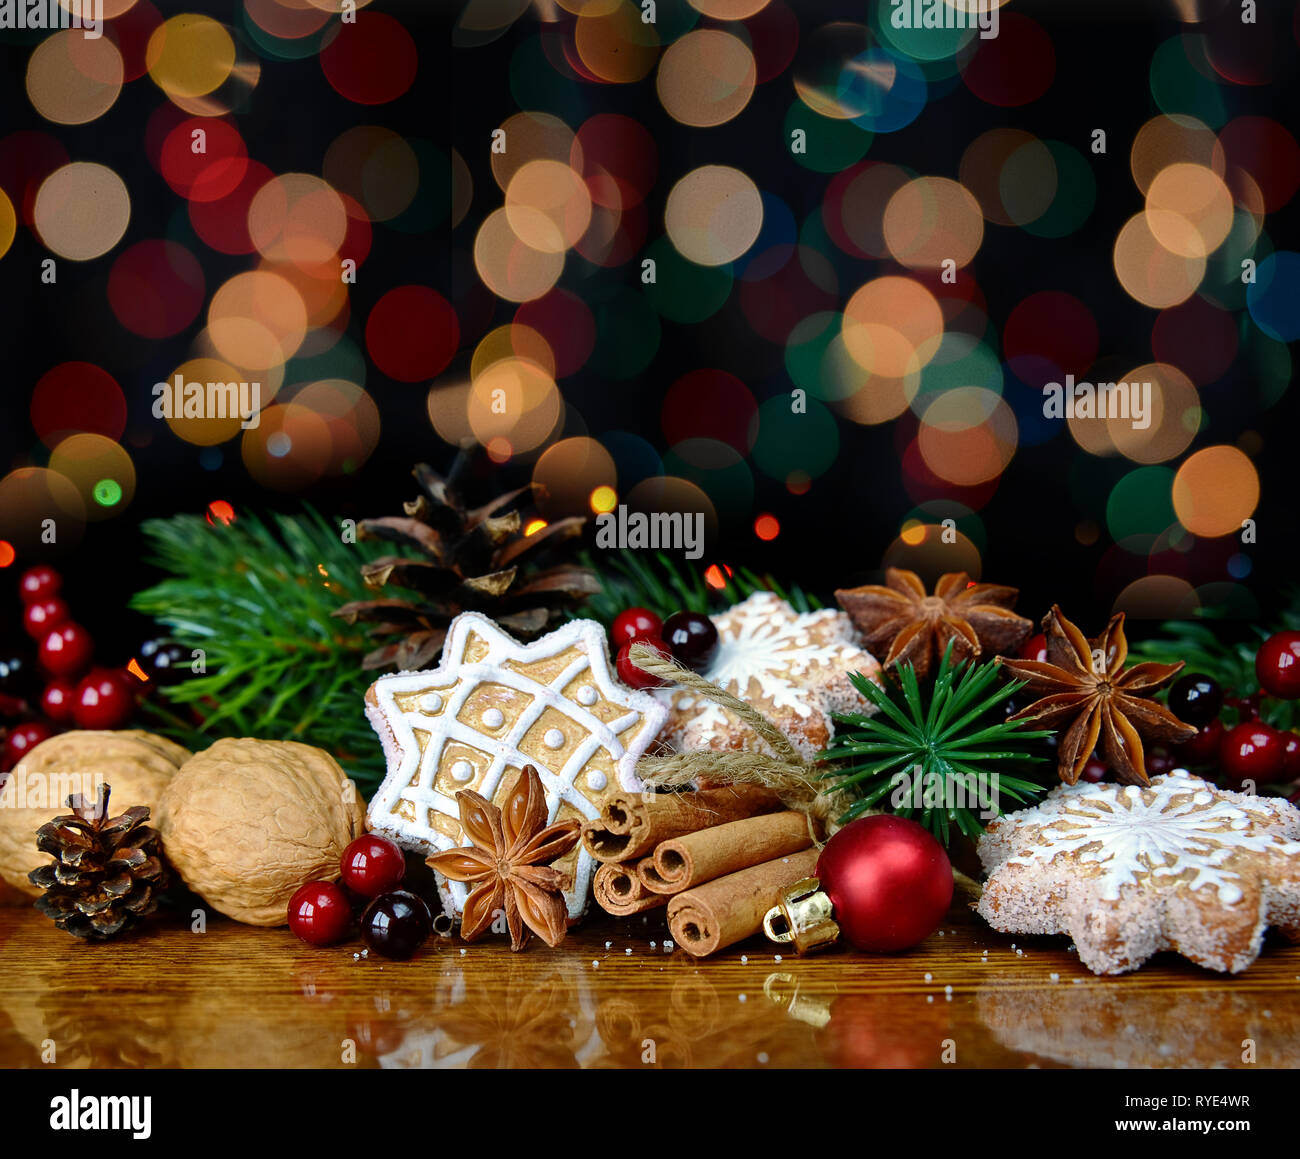 Belle composition avec gingerbread cookies de Noël, branches d'épinette, les noix, la cannelle et la badiane sont sur l'arrière-plan de lumières colorées Banque D'Images